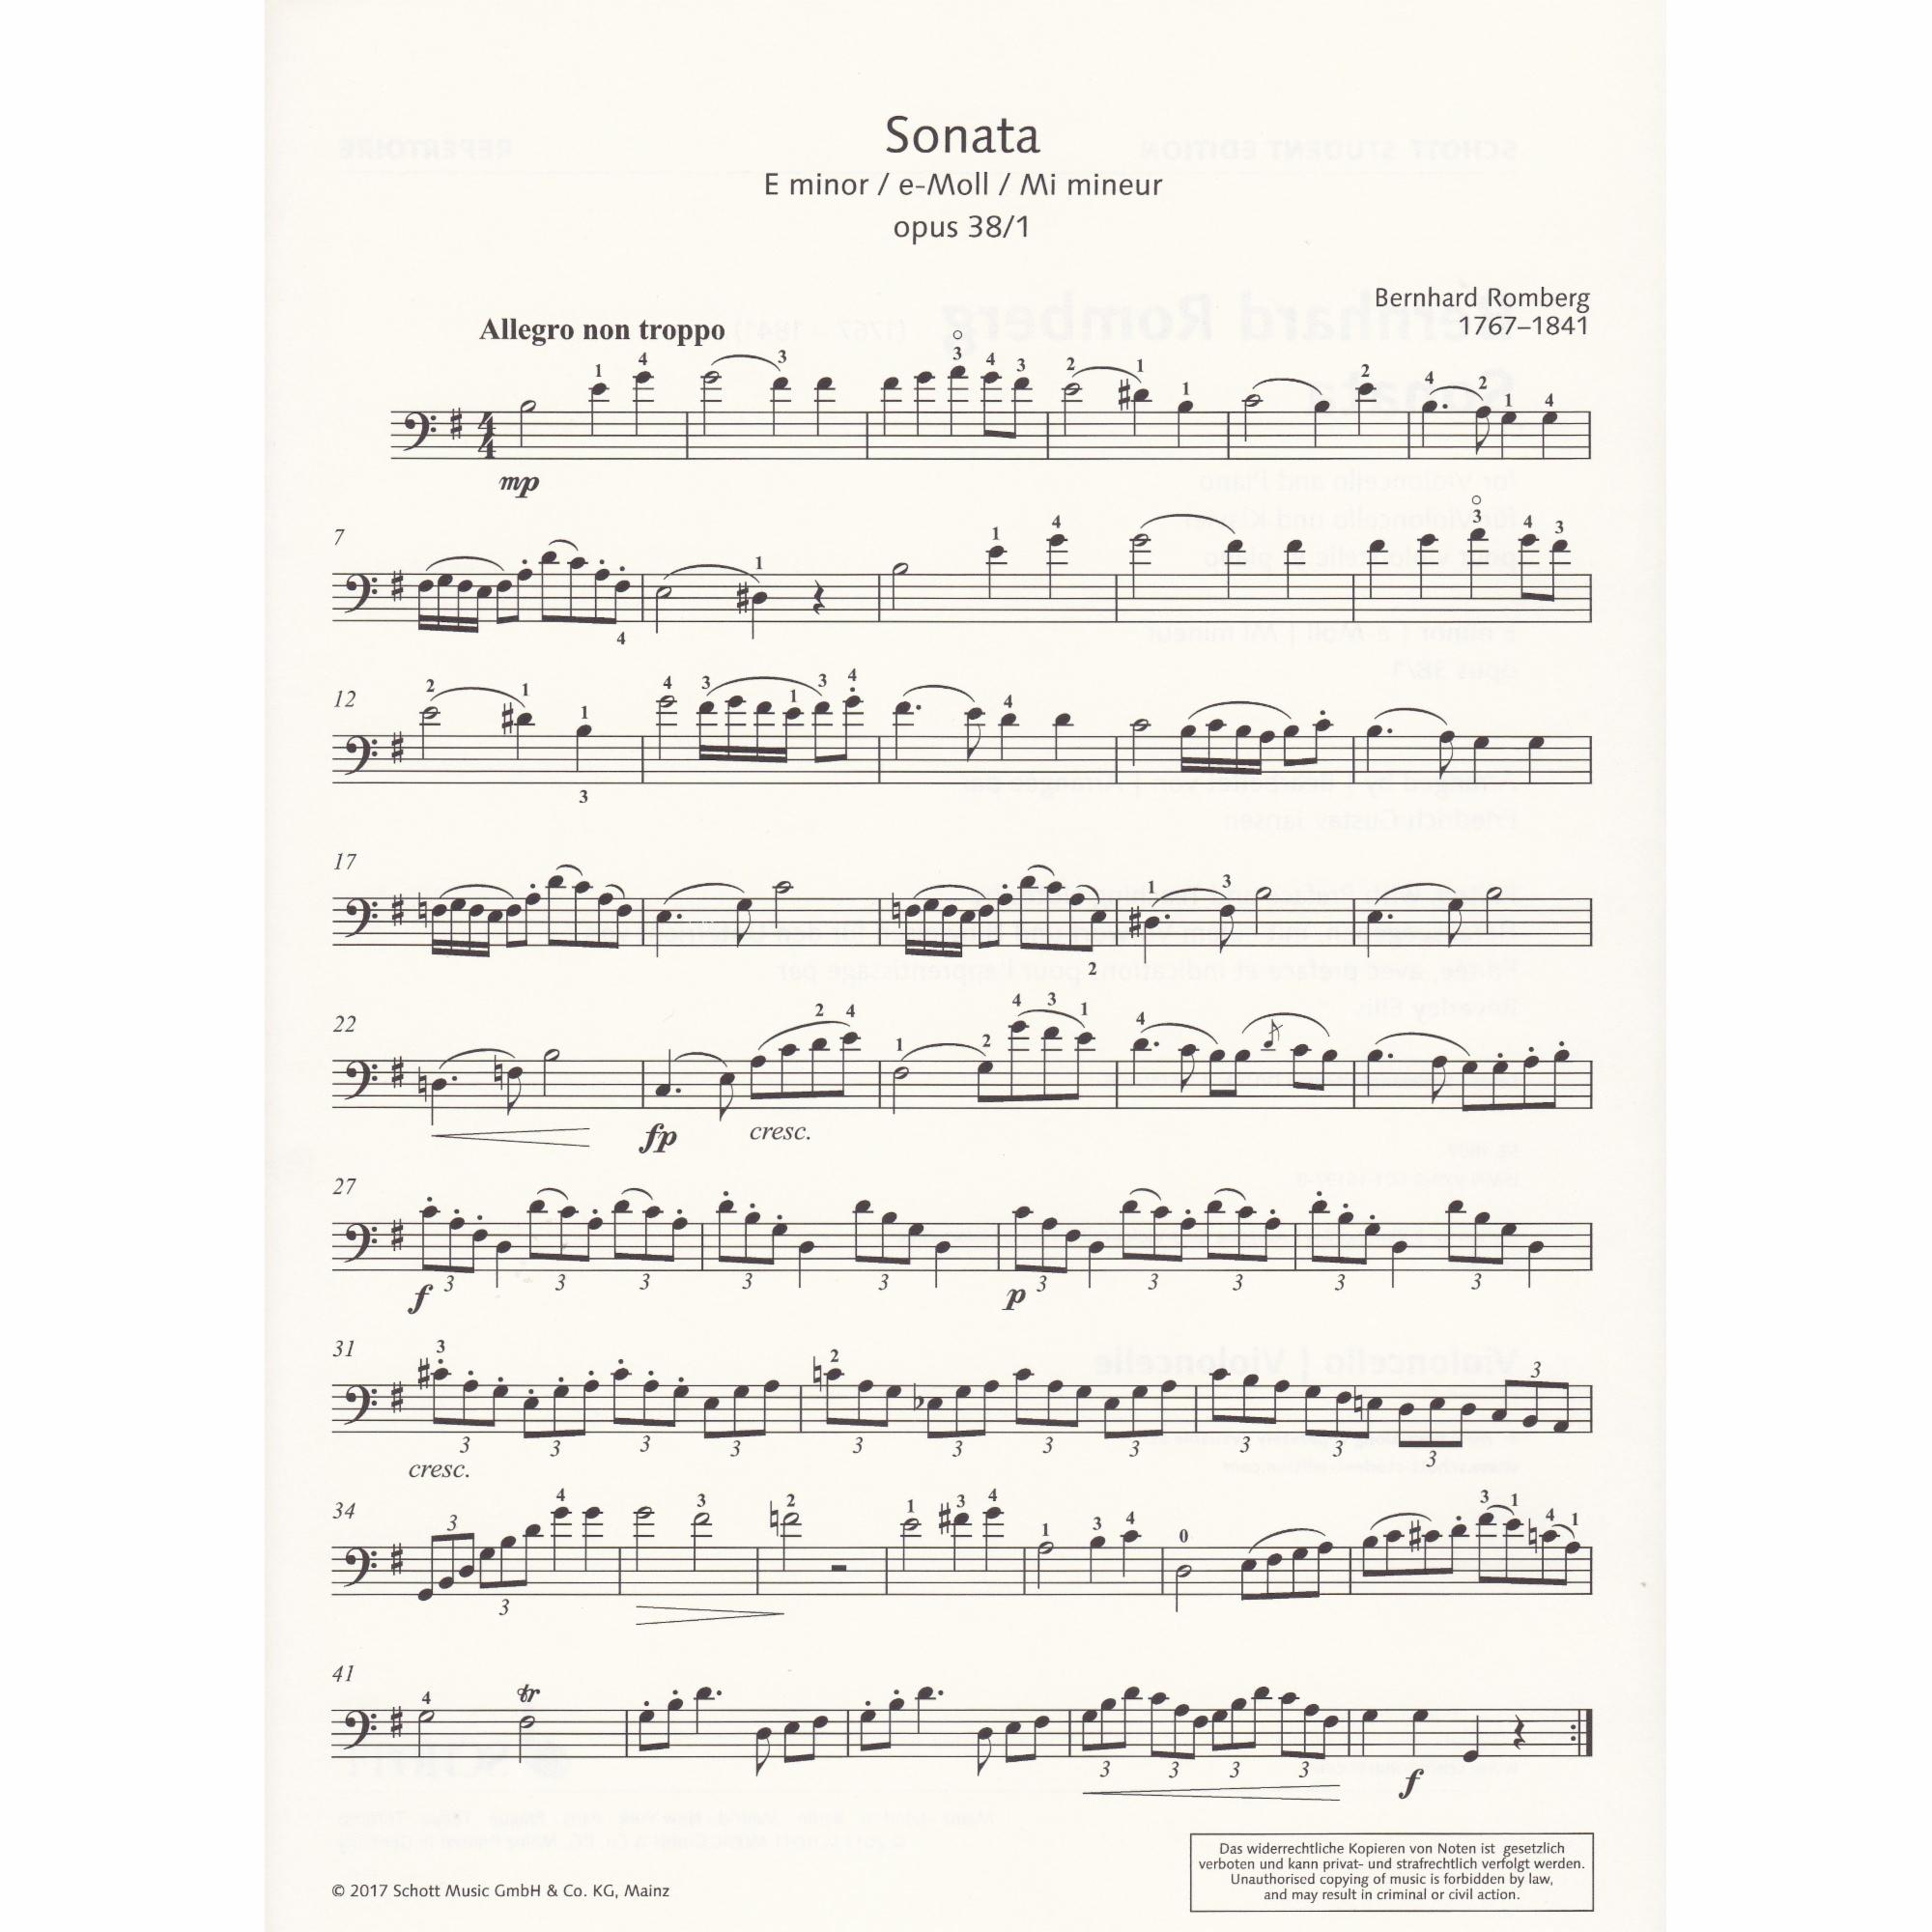 Sonata in E Minor, Op. 38 No. 1, for Cello and Piano